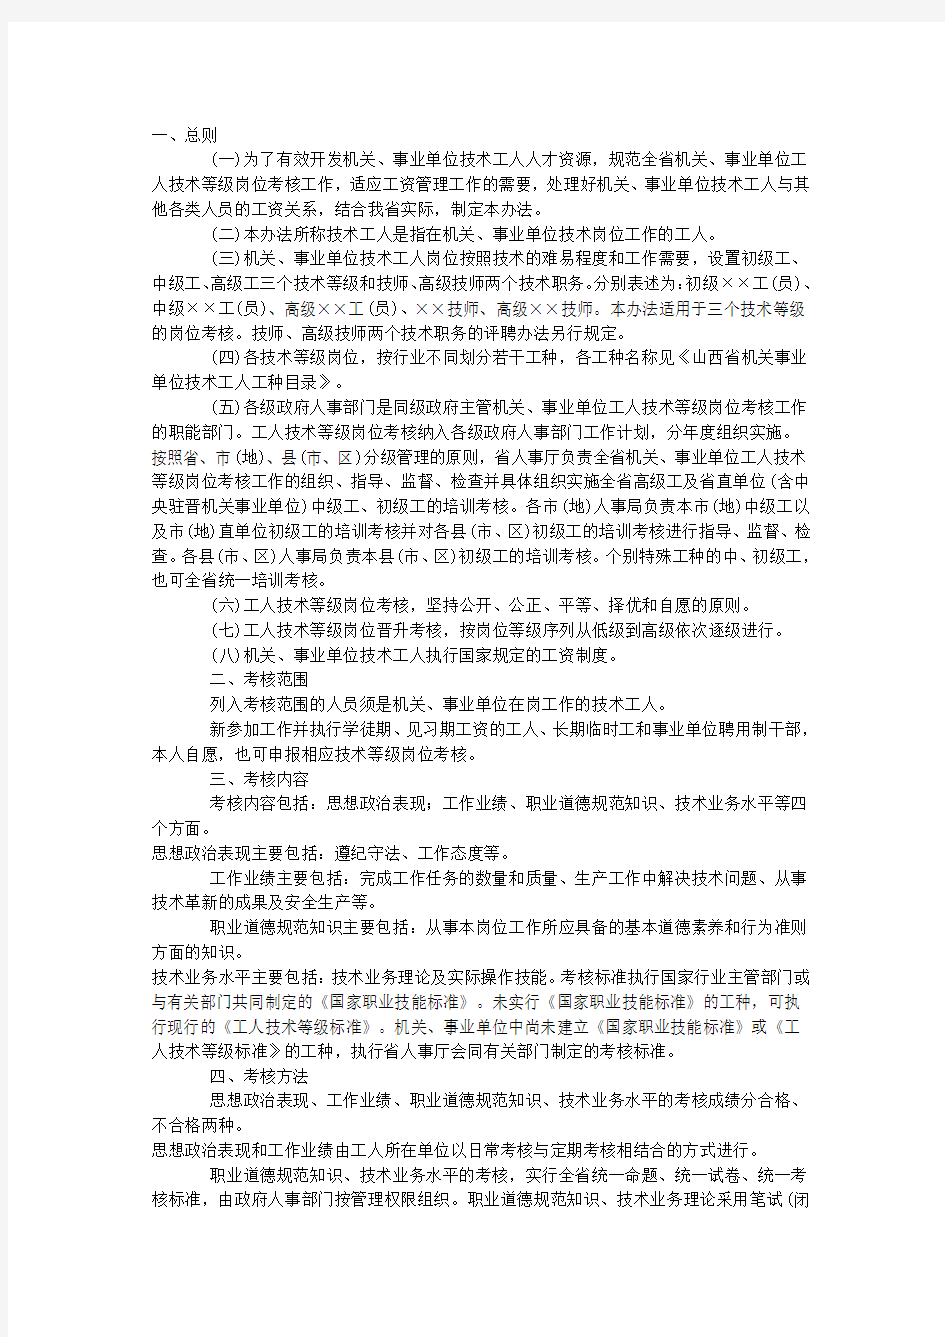 山西省机关事业单位工人技术等级岗位考核办法(晋人工字[2002]31号)